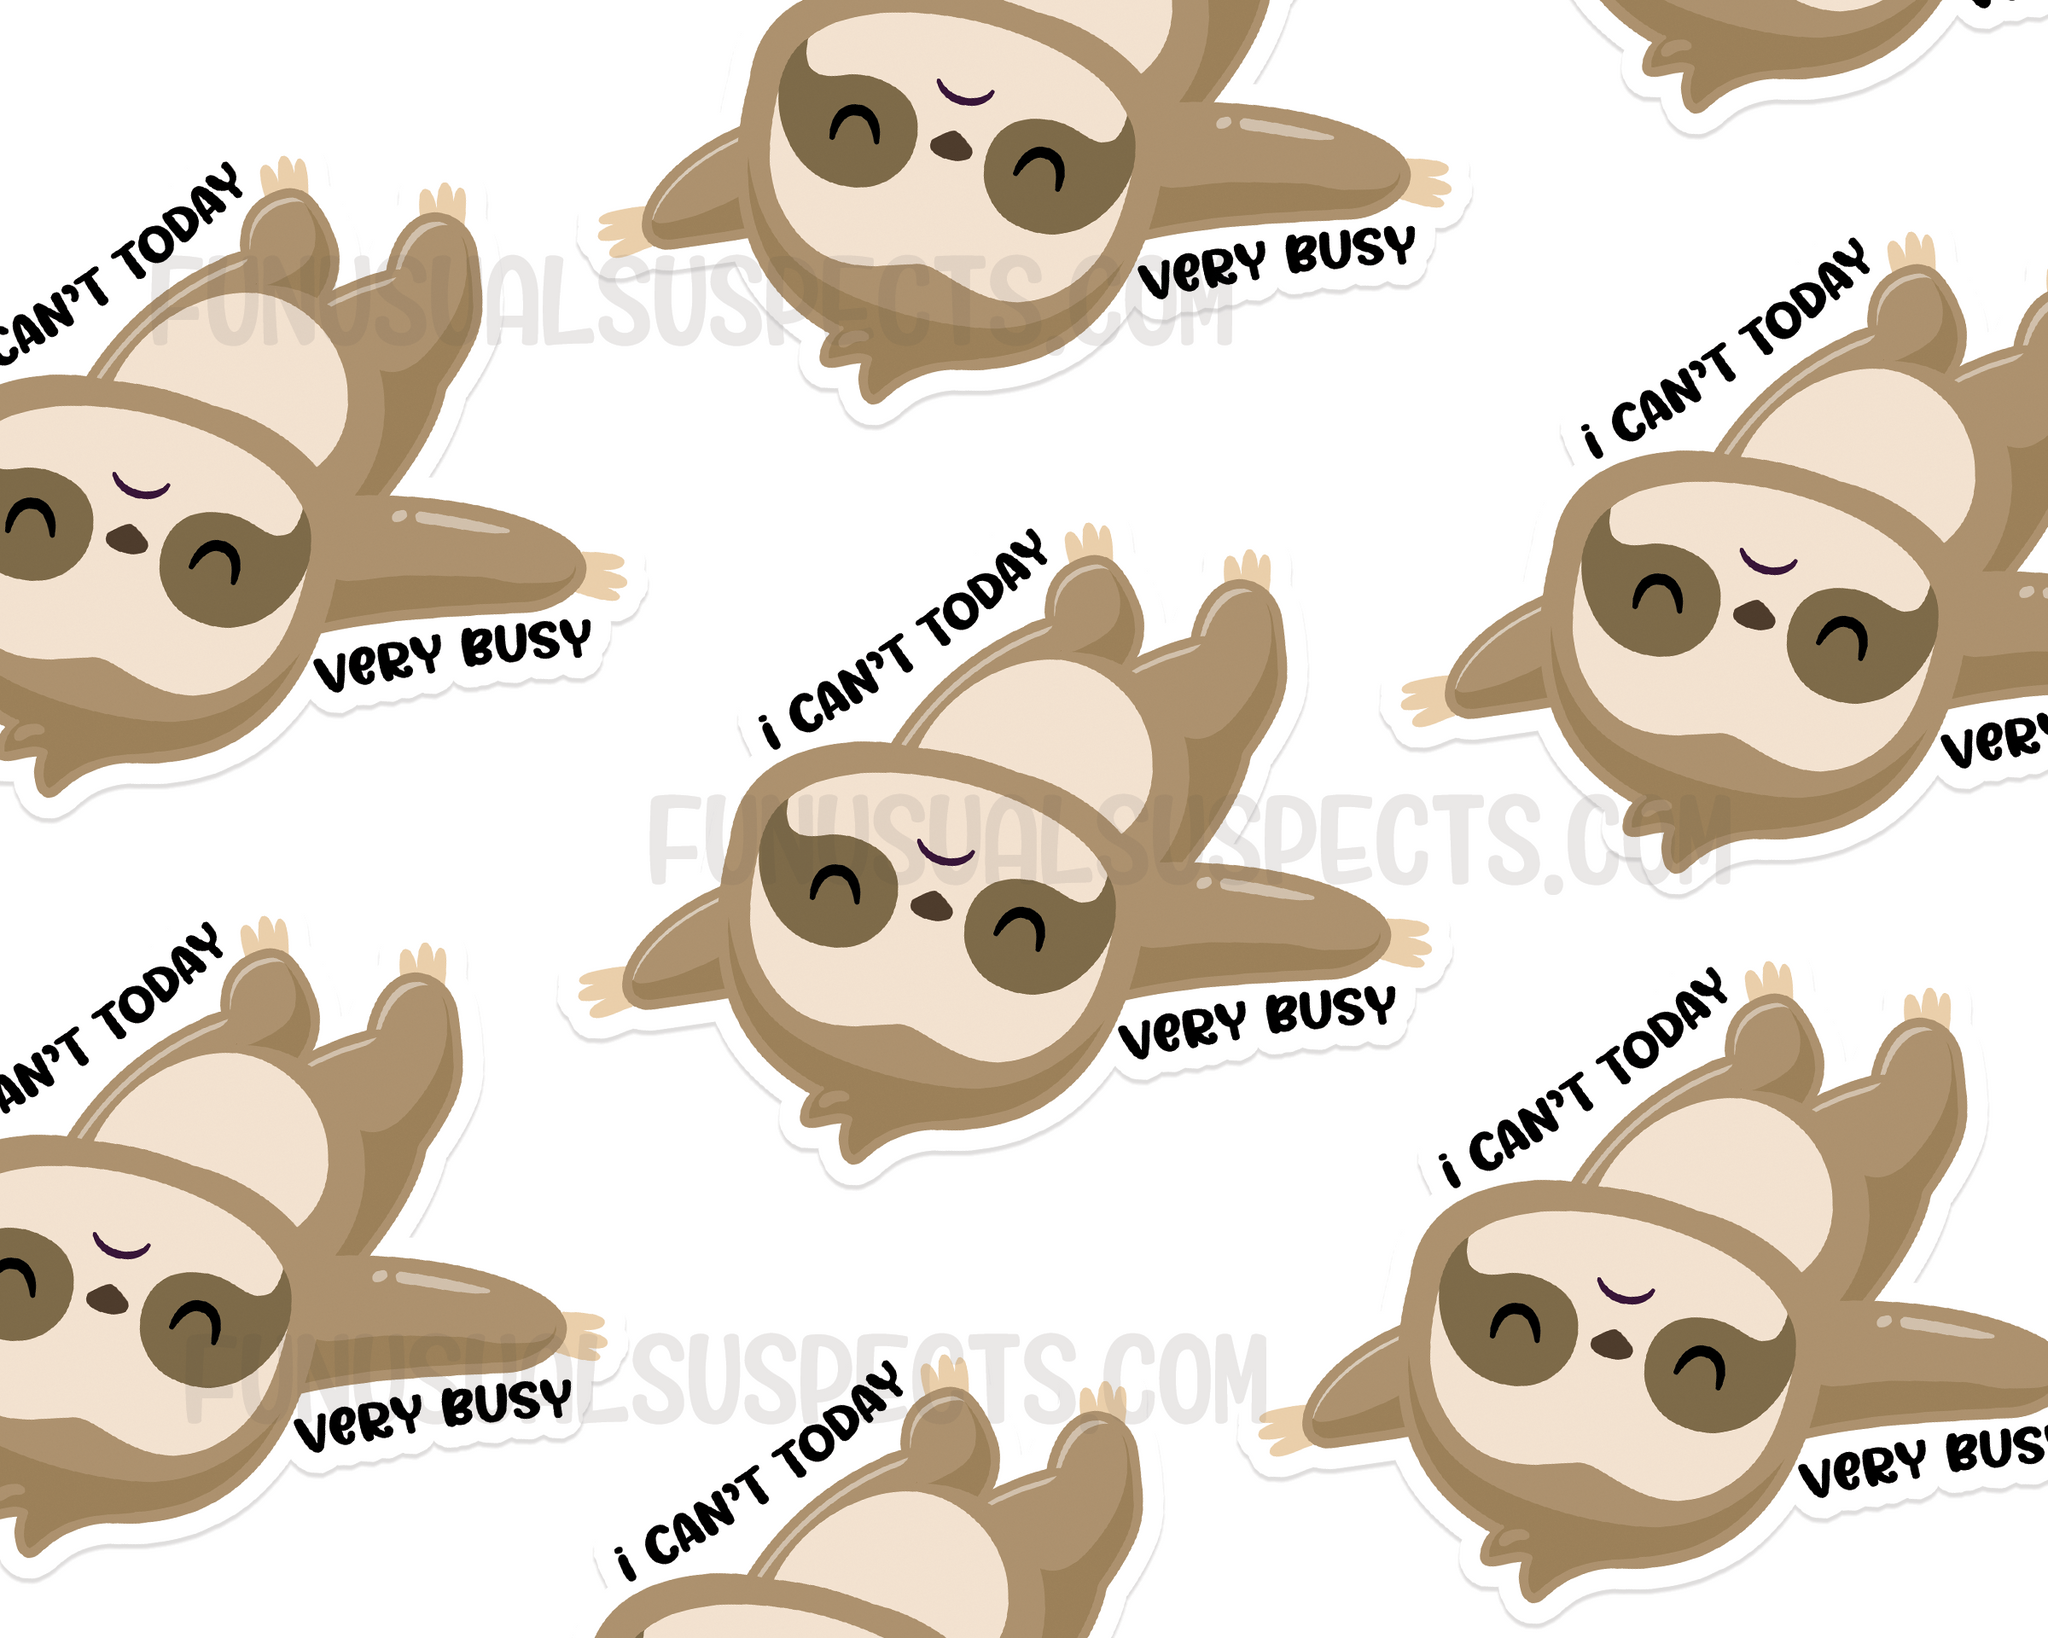 Sloth Very Busy Sticker